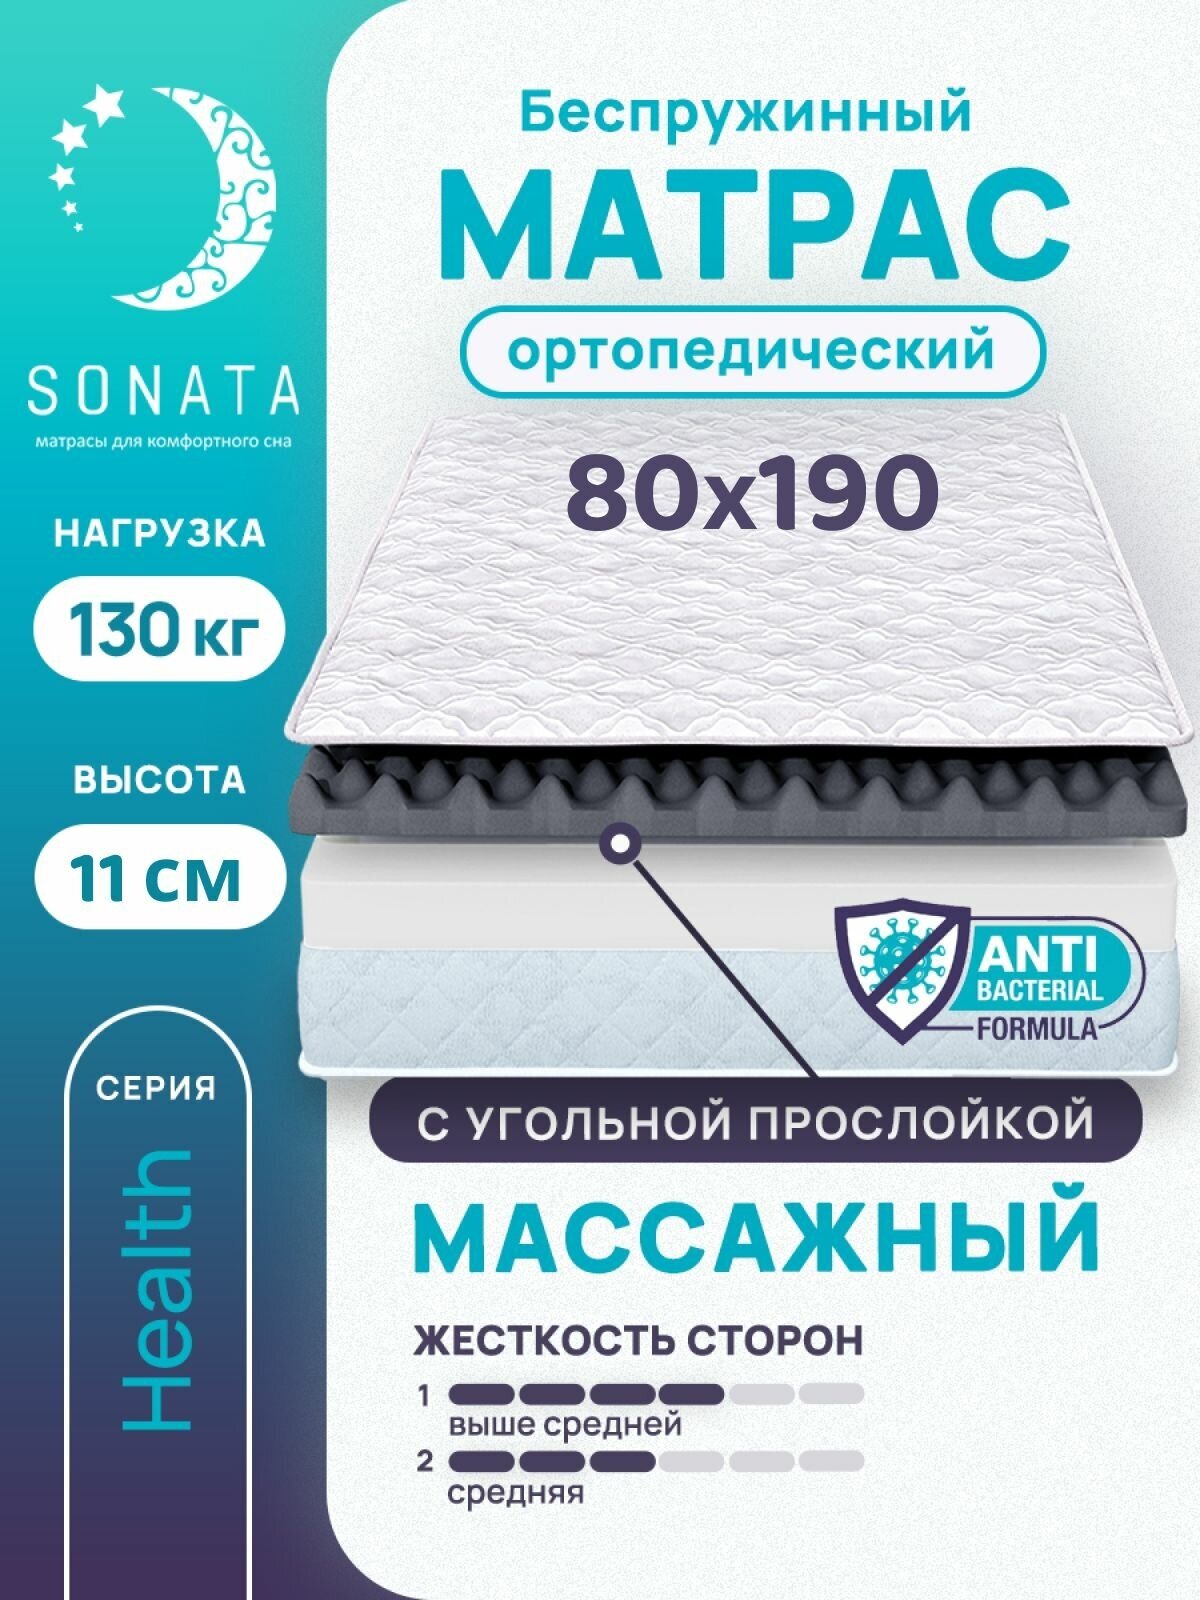 Матрас 80х190 см SONATA, беспружинный, односпальный, матрац для кровати, высота 11 см, с массажным эффектом